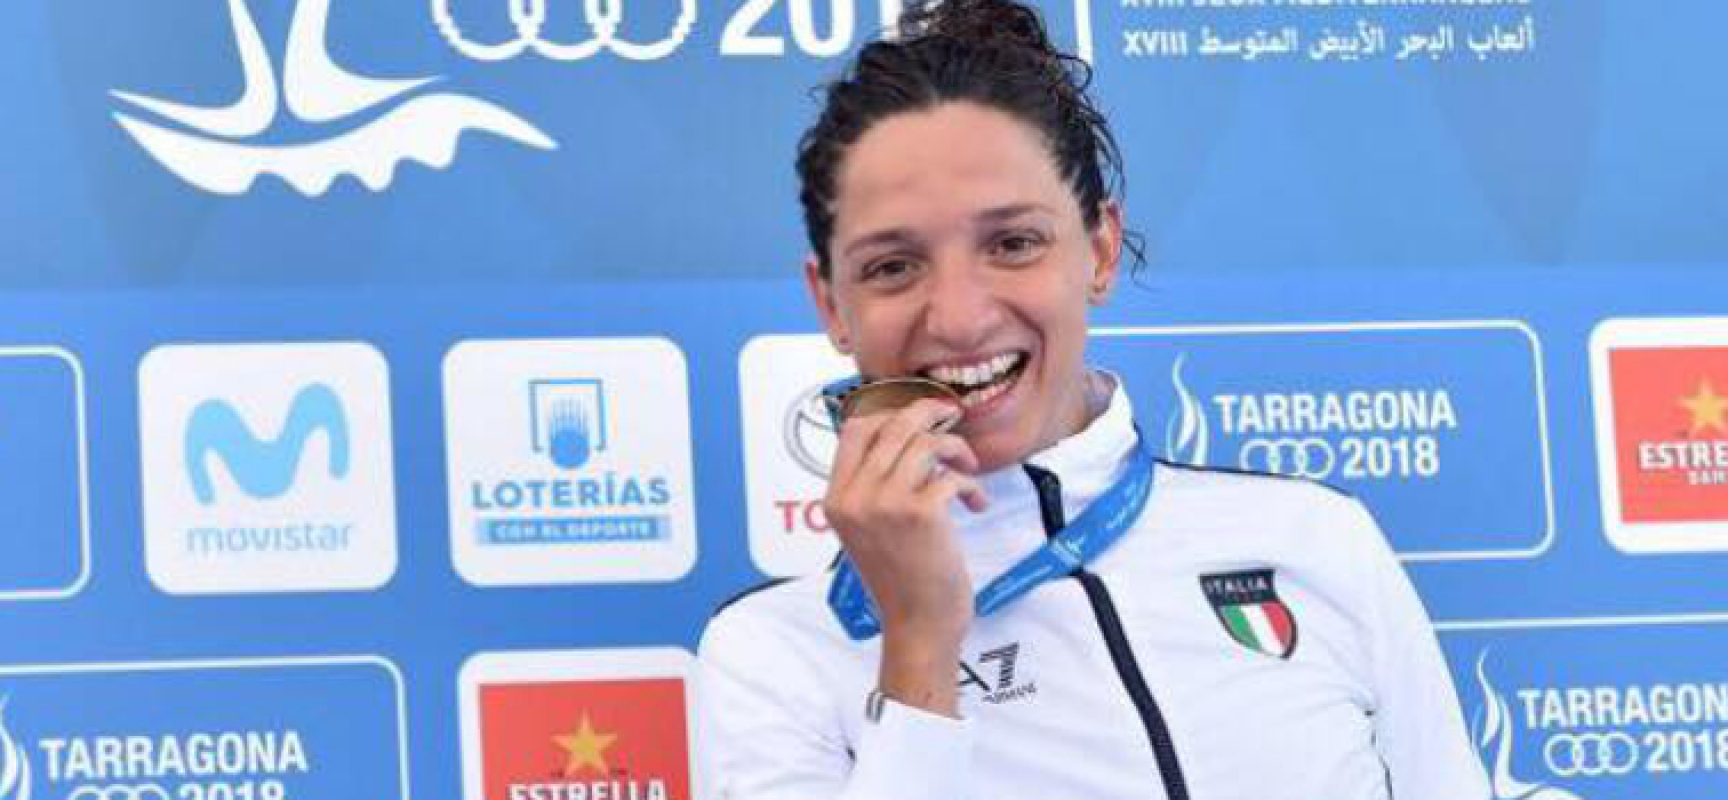 Giochi del Mediterraneo 2018: nuova medaglia per Elena Di Liddo